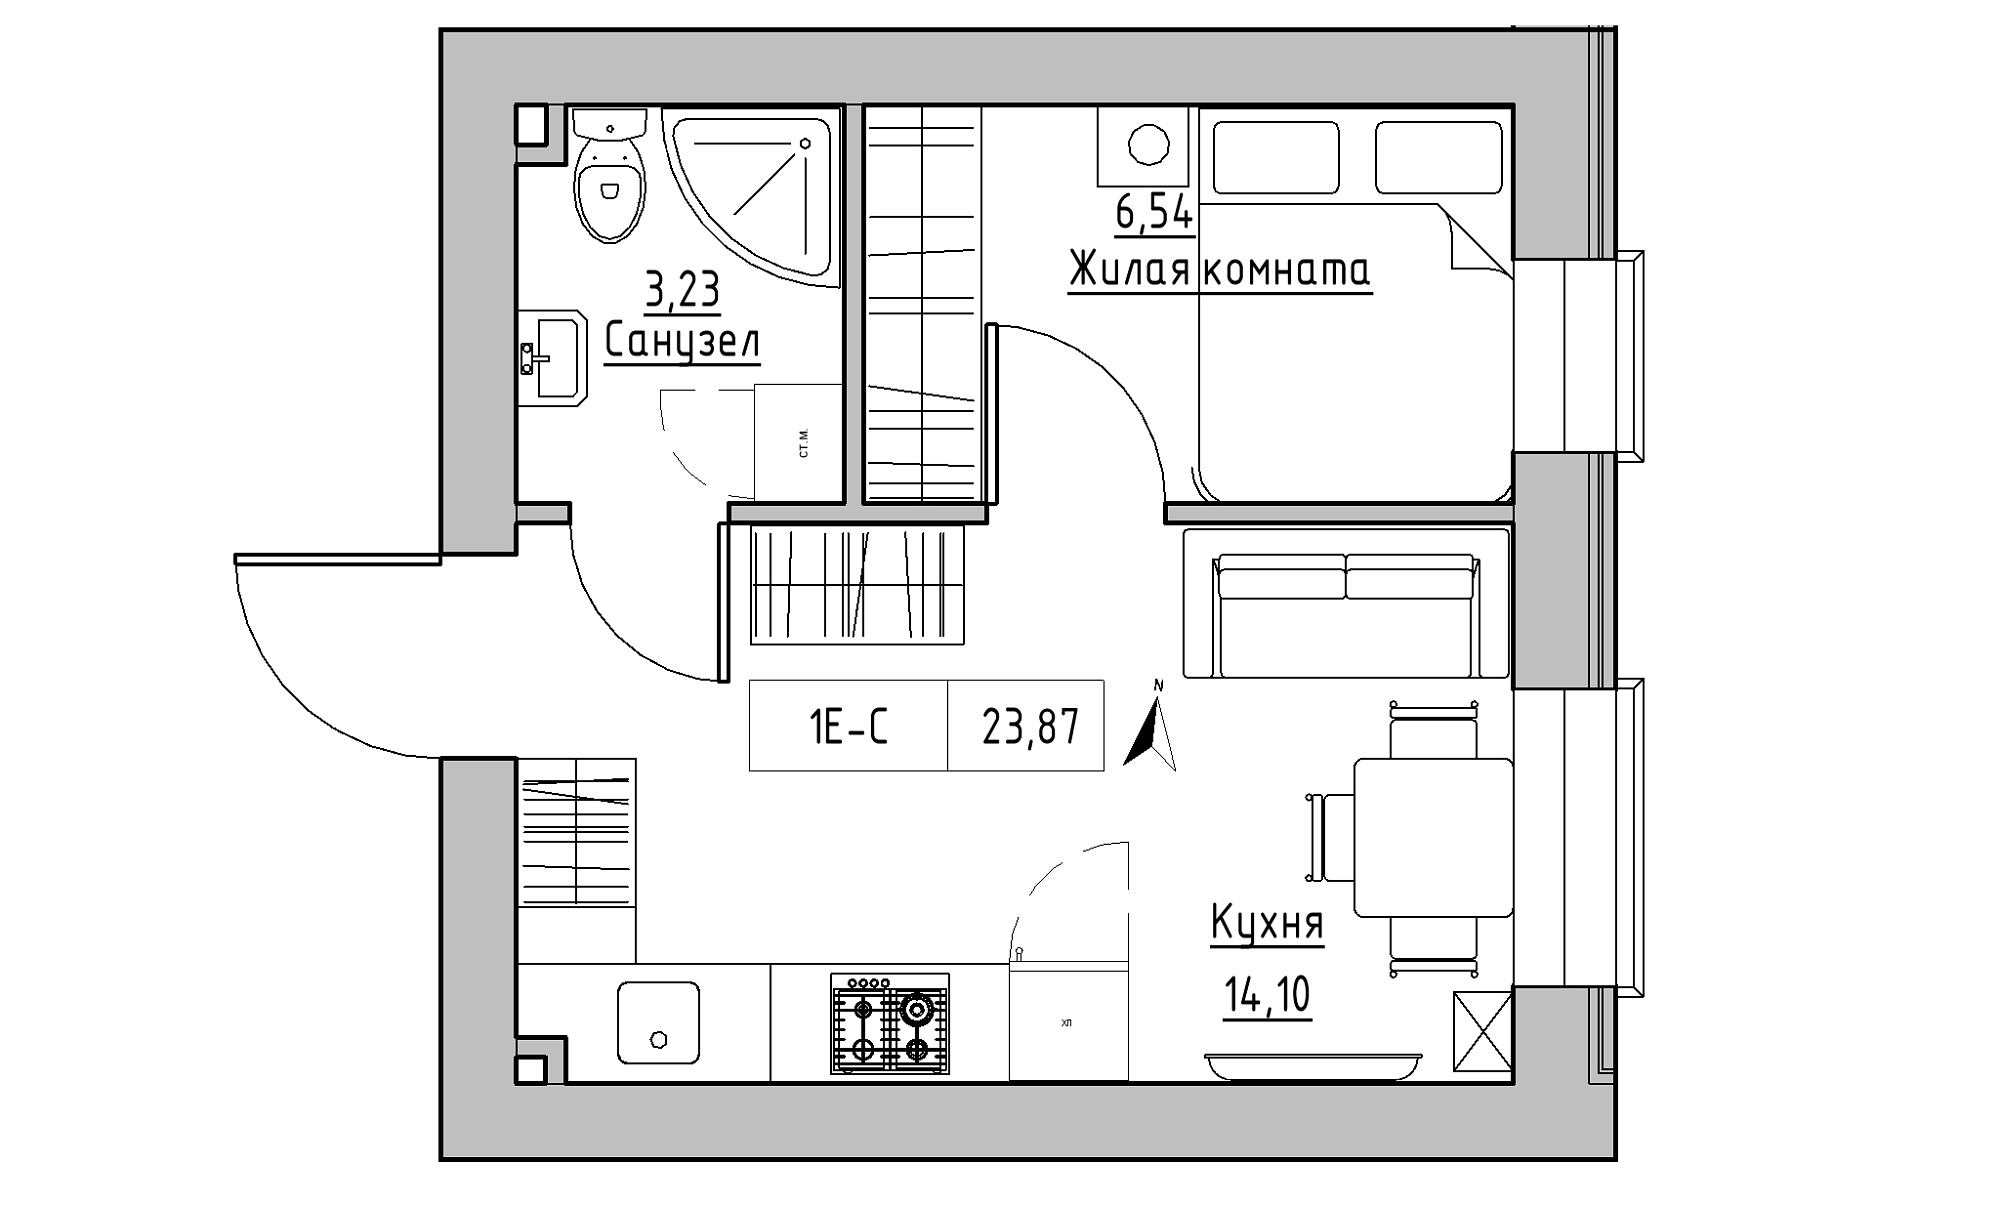 Планировка 1-к квартира площей 23.87м2, KS-023-01/0004.